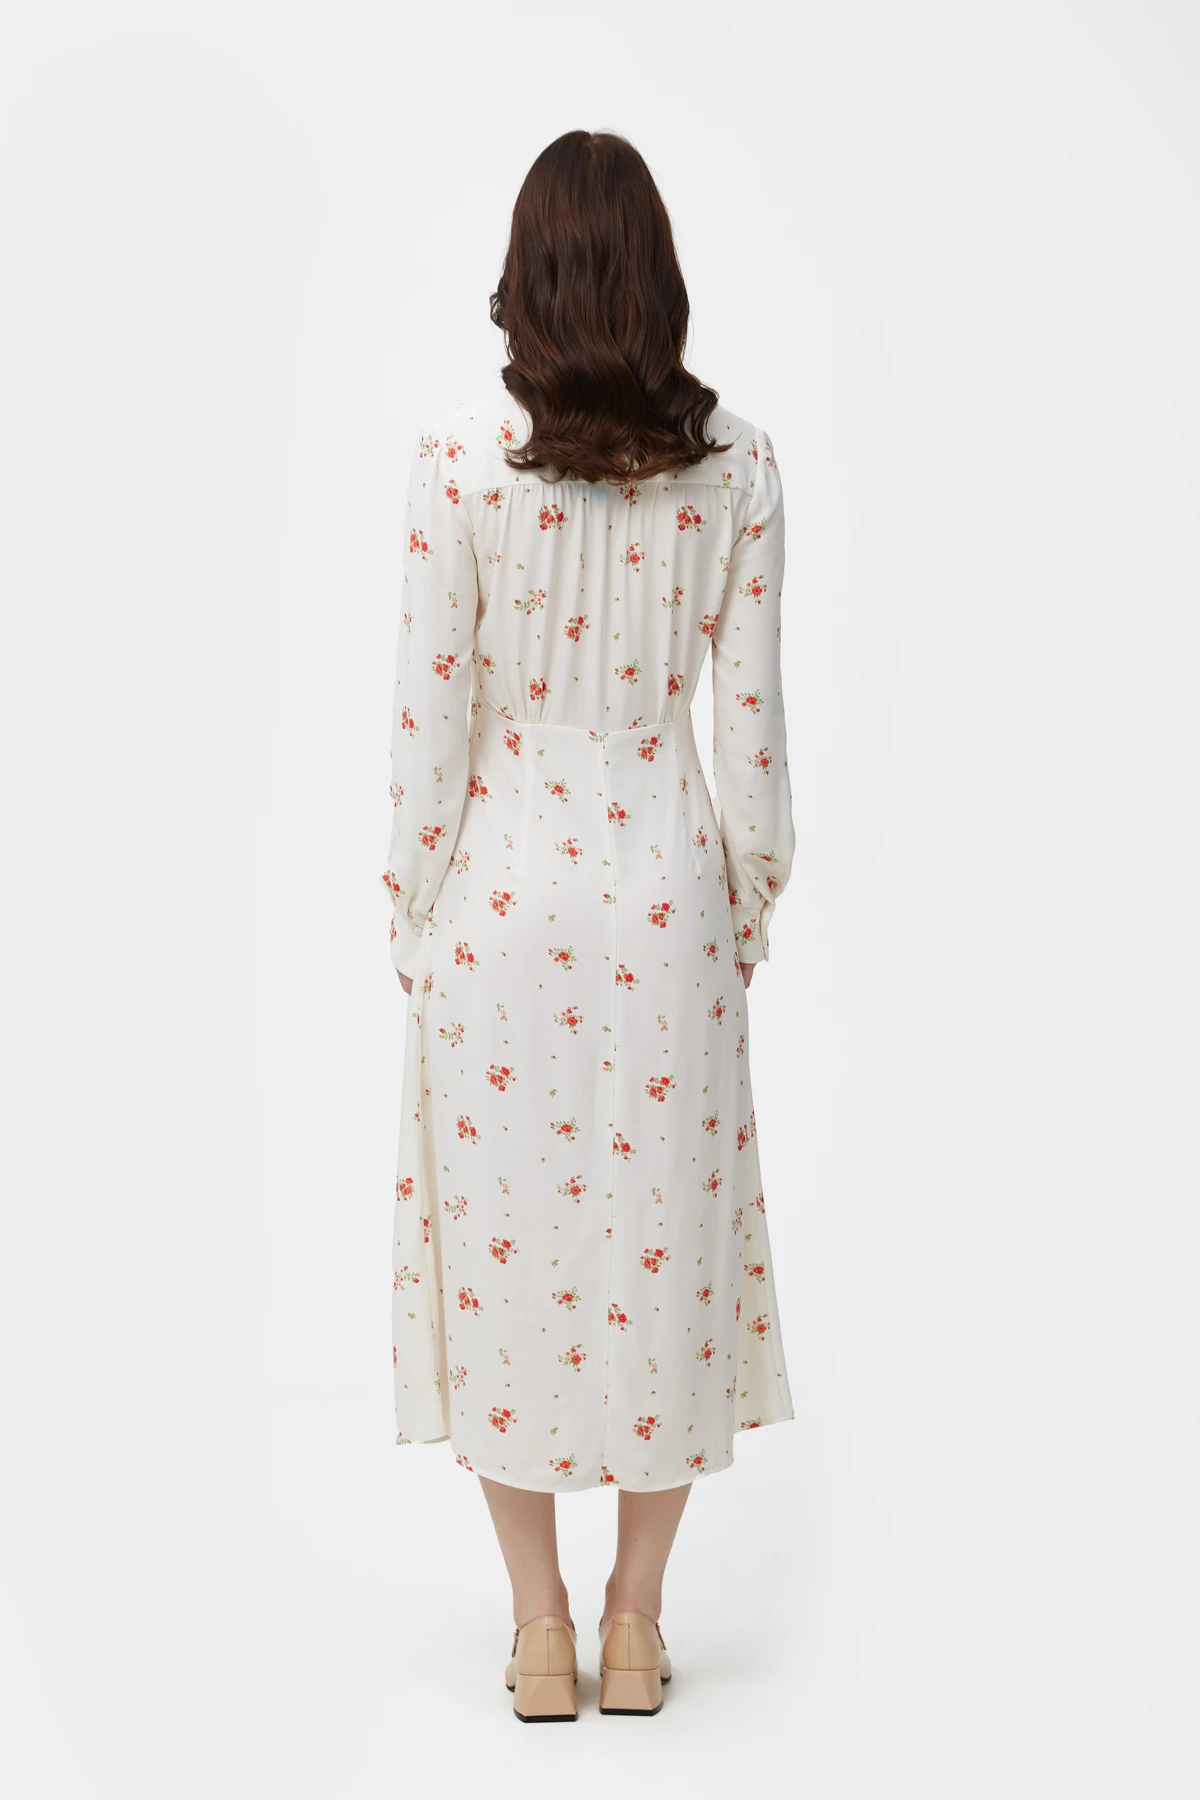 Молочное приталенное платье миди из вискозы в авторский принт красные розы, фото 4